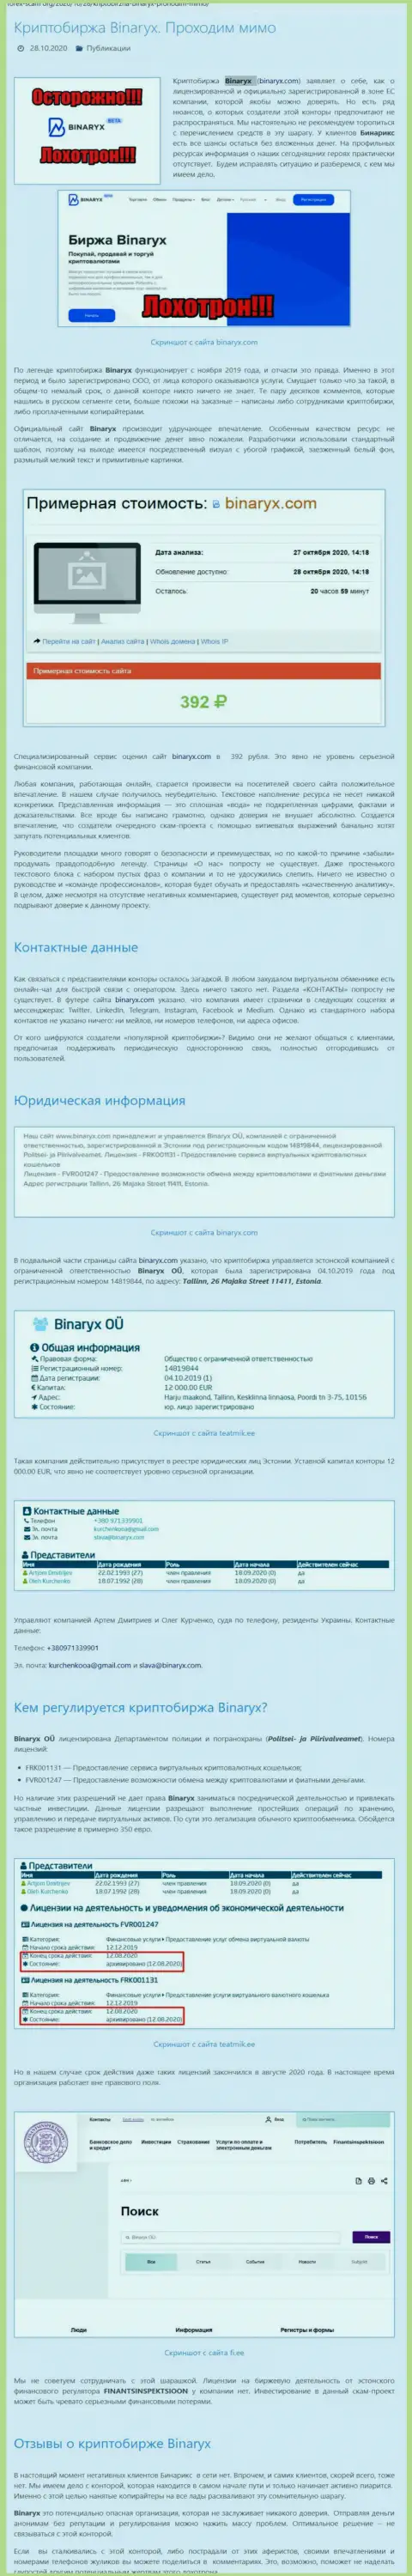 Binaryx Com - это МОШЕННИКИ !!! Отжатие депозита гарантируют стопроцентно (обзор организации)